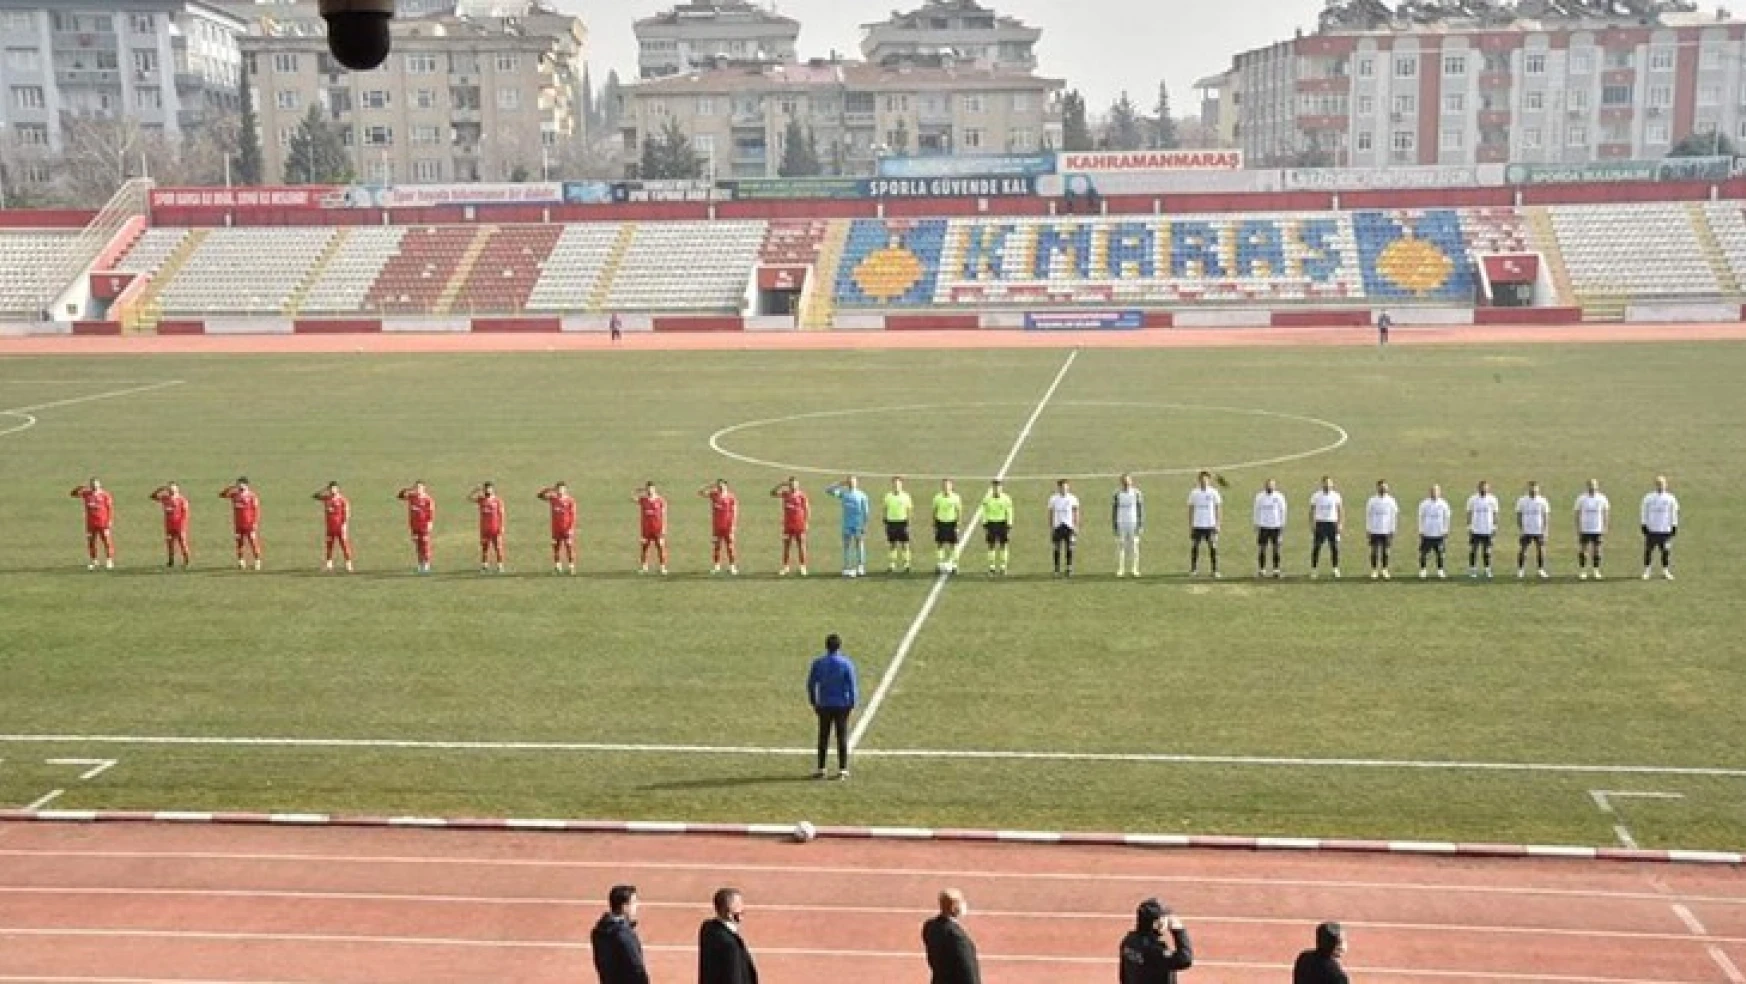 Kahramanmaraşspor'un 7'nci hafta istatistiği: 7 Maç, 7 mağlubiyet, 0 puan, 20'nci sıra